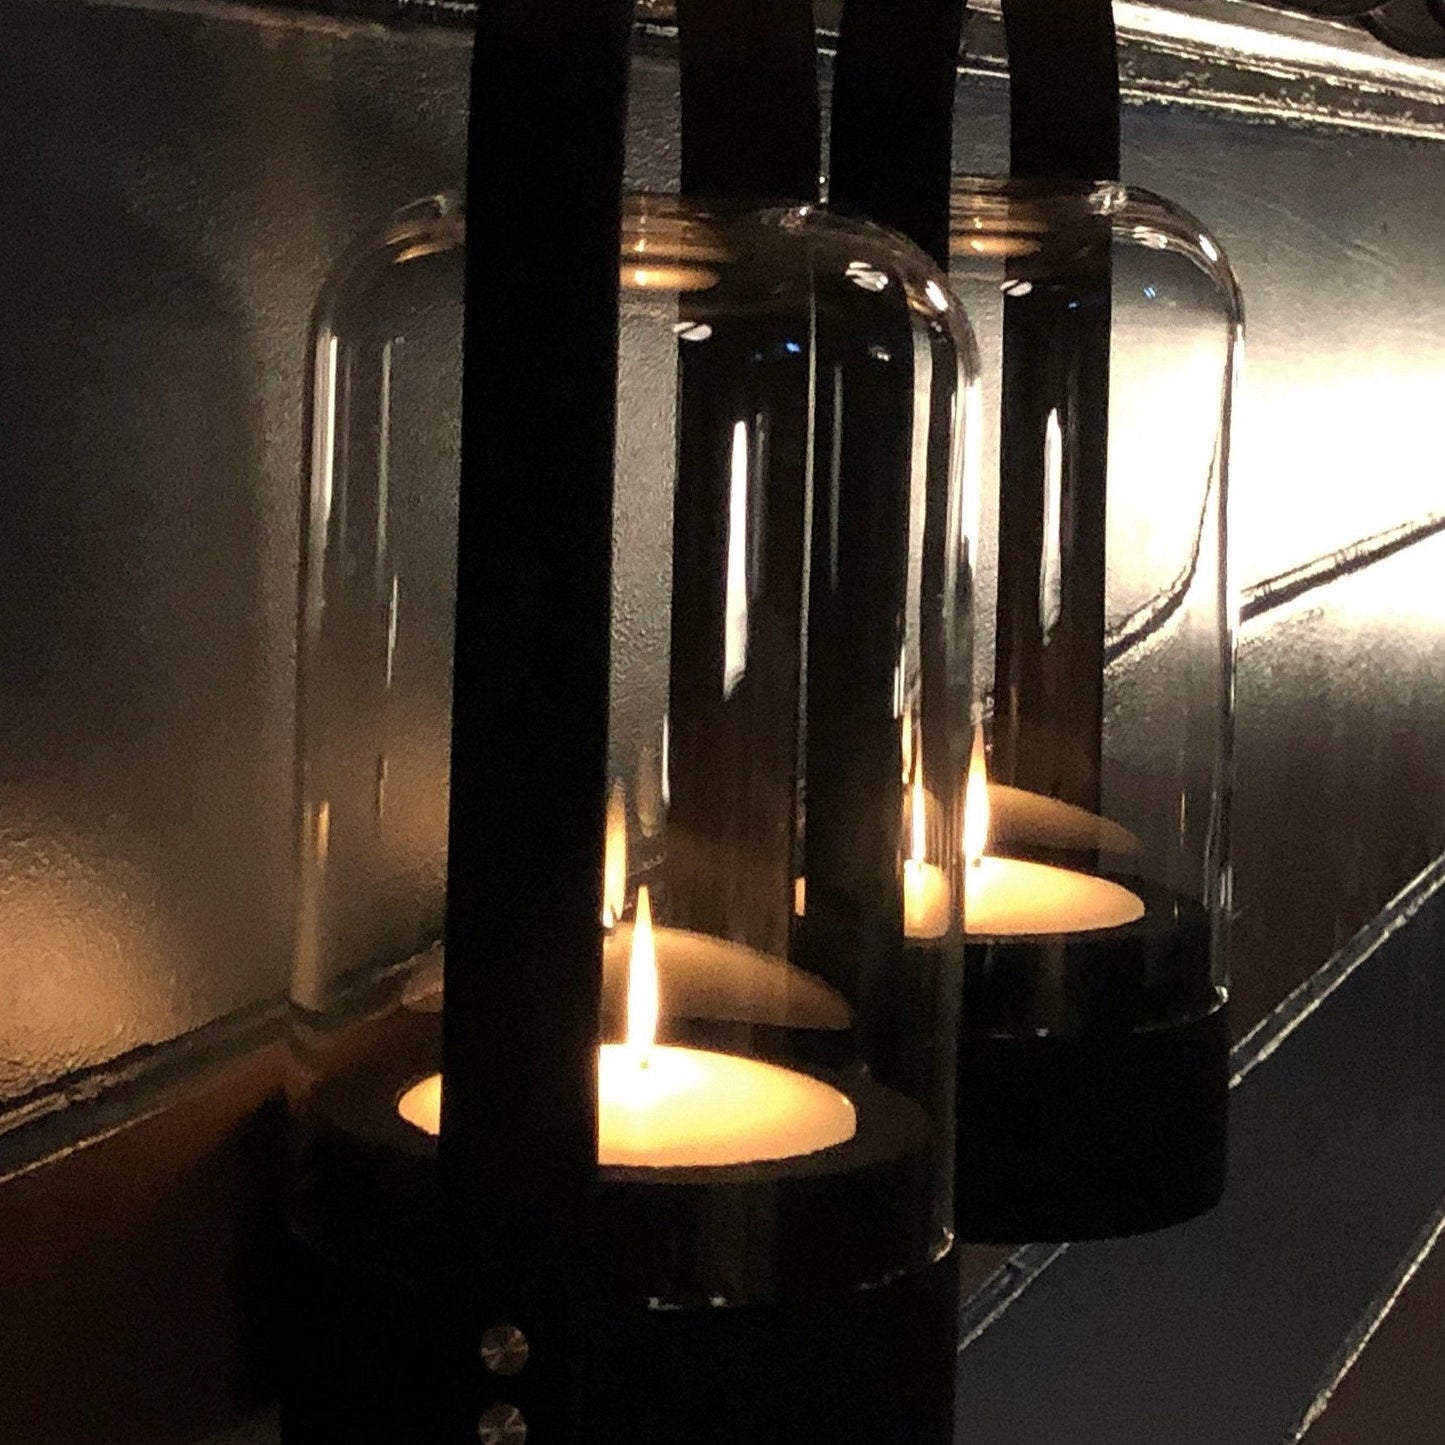 Candlelight Portable LED Lantern